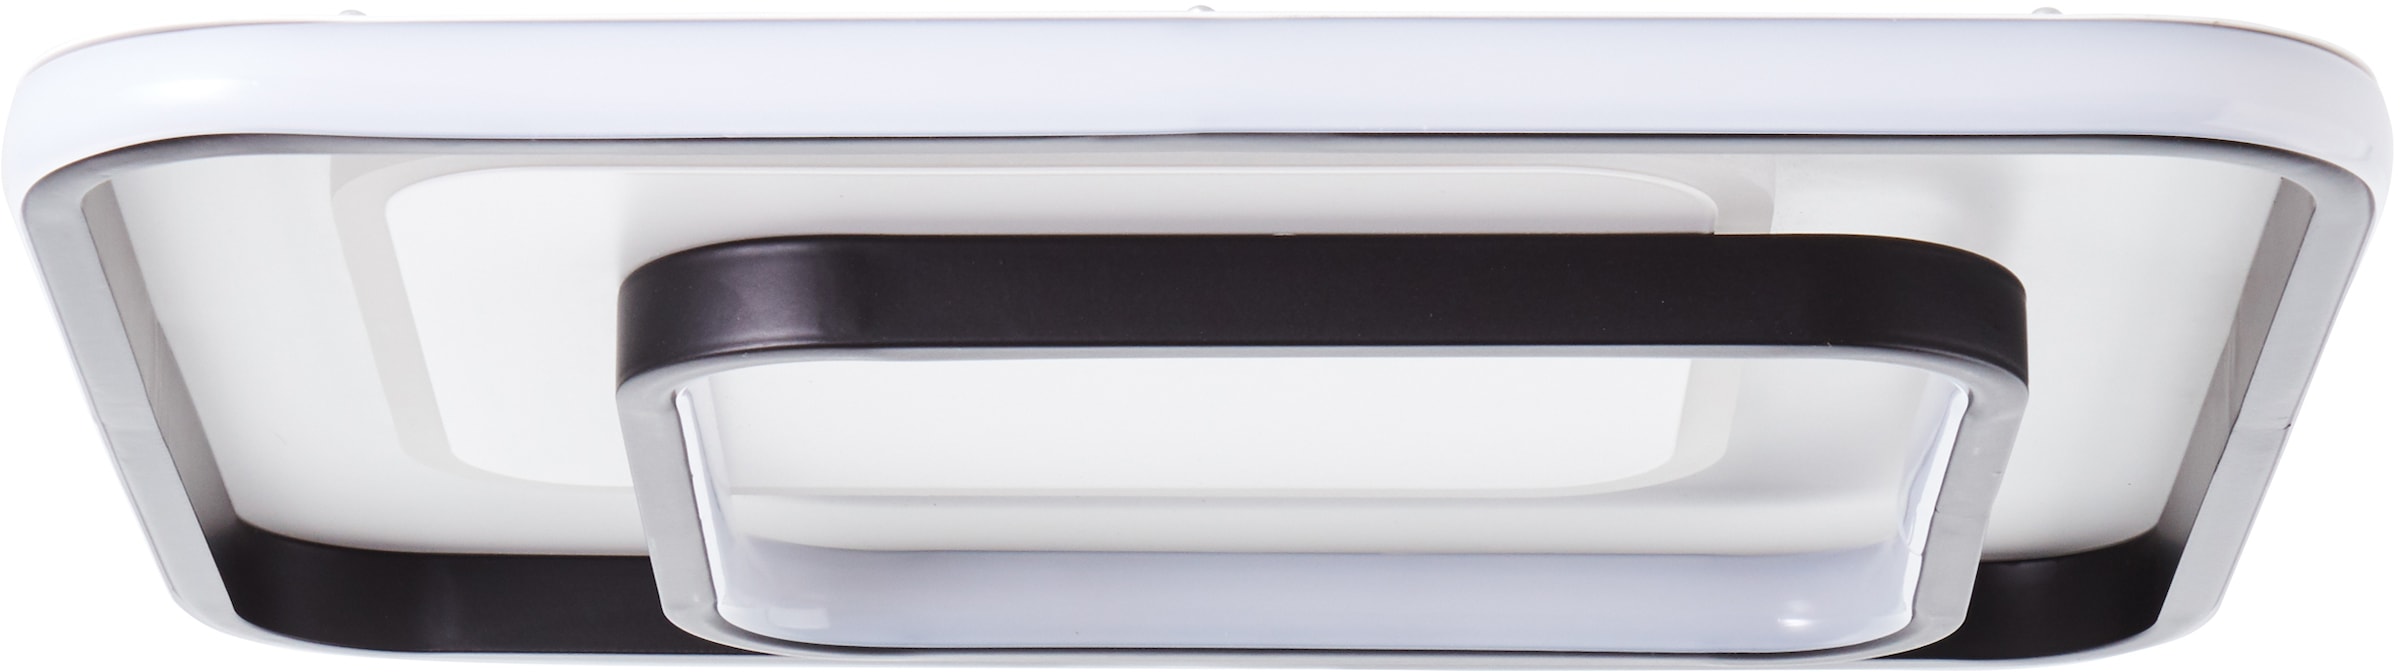 Brilliant LED Deckenleuchte »Cava«, 1 flammig-flammig, 40 x 40 cm, 5400 lm,  warmweißes Licht, Metall/Kunststoff, weiß/schwarz kaufen online bei OTTO